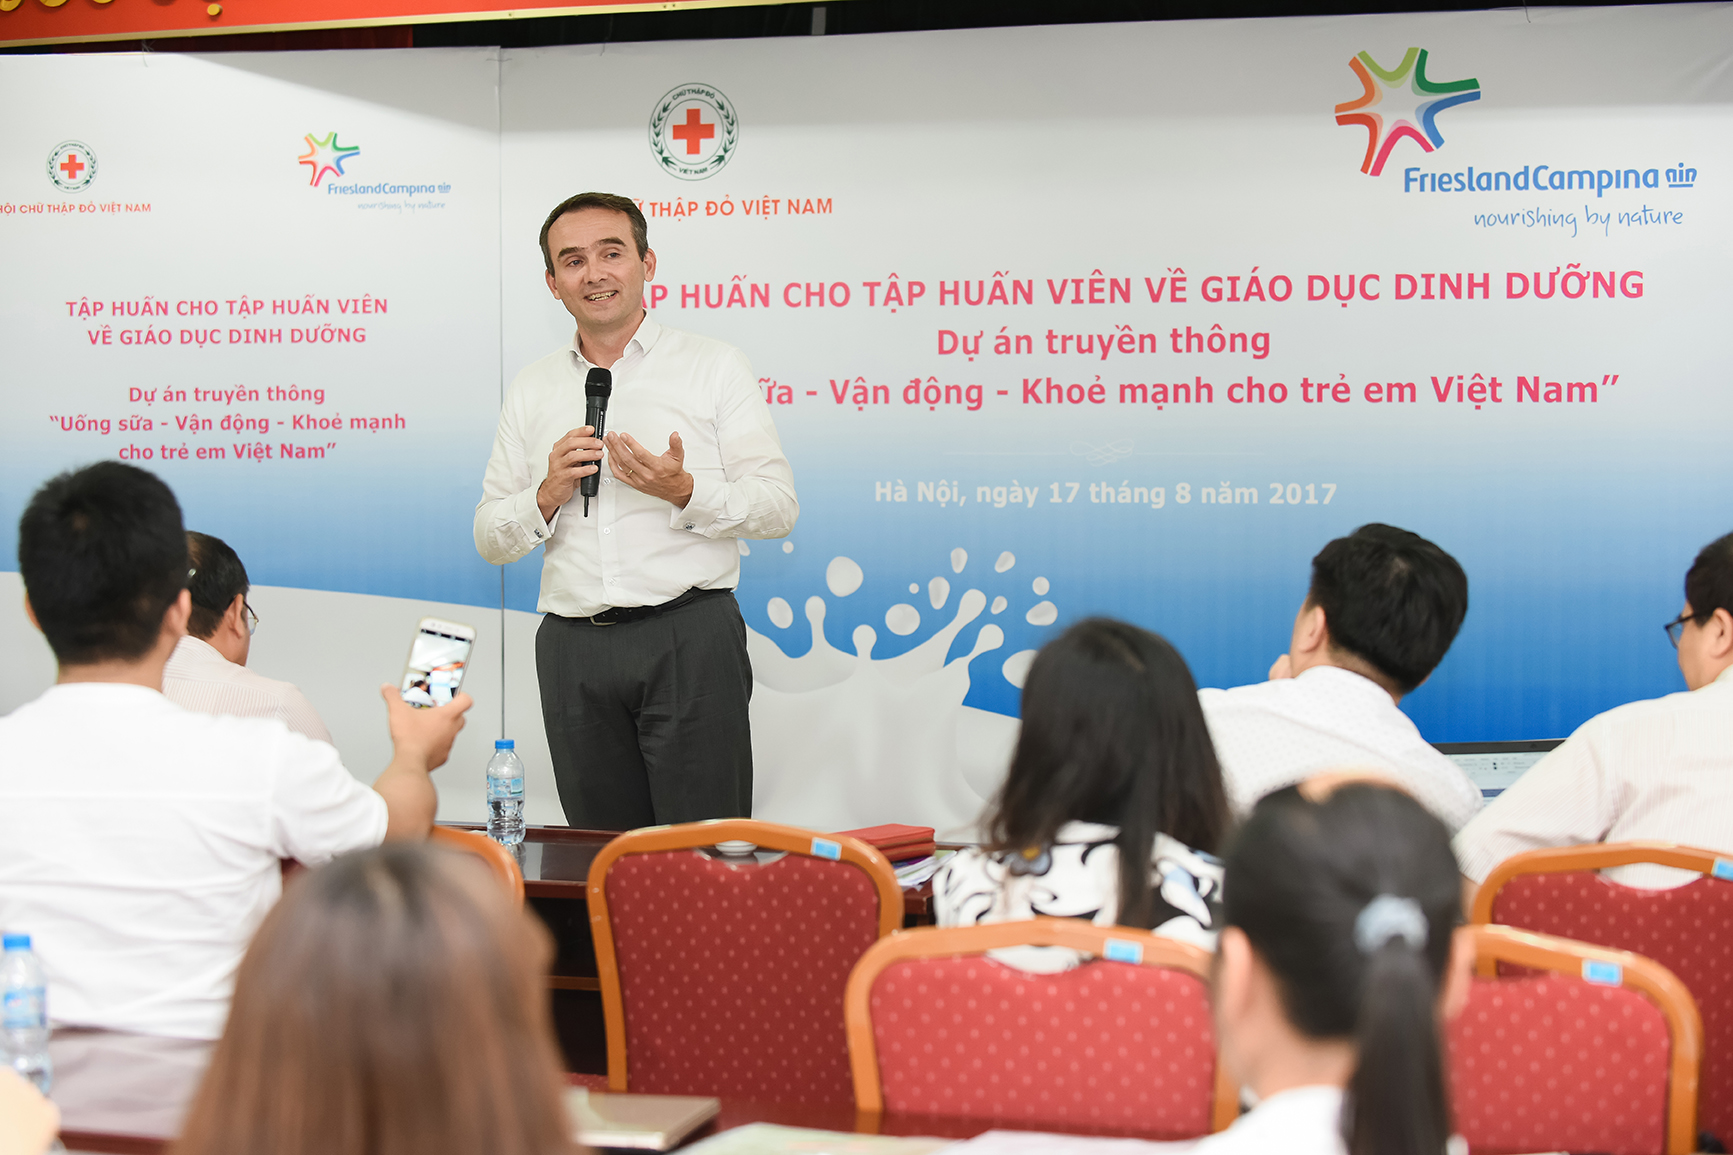 Ông Arnoud Van Den Benrg – Tổng giám đốc FrieslandCampina Việt Nam tại buổi tập huấn.